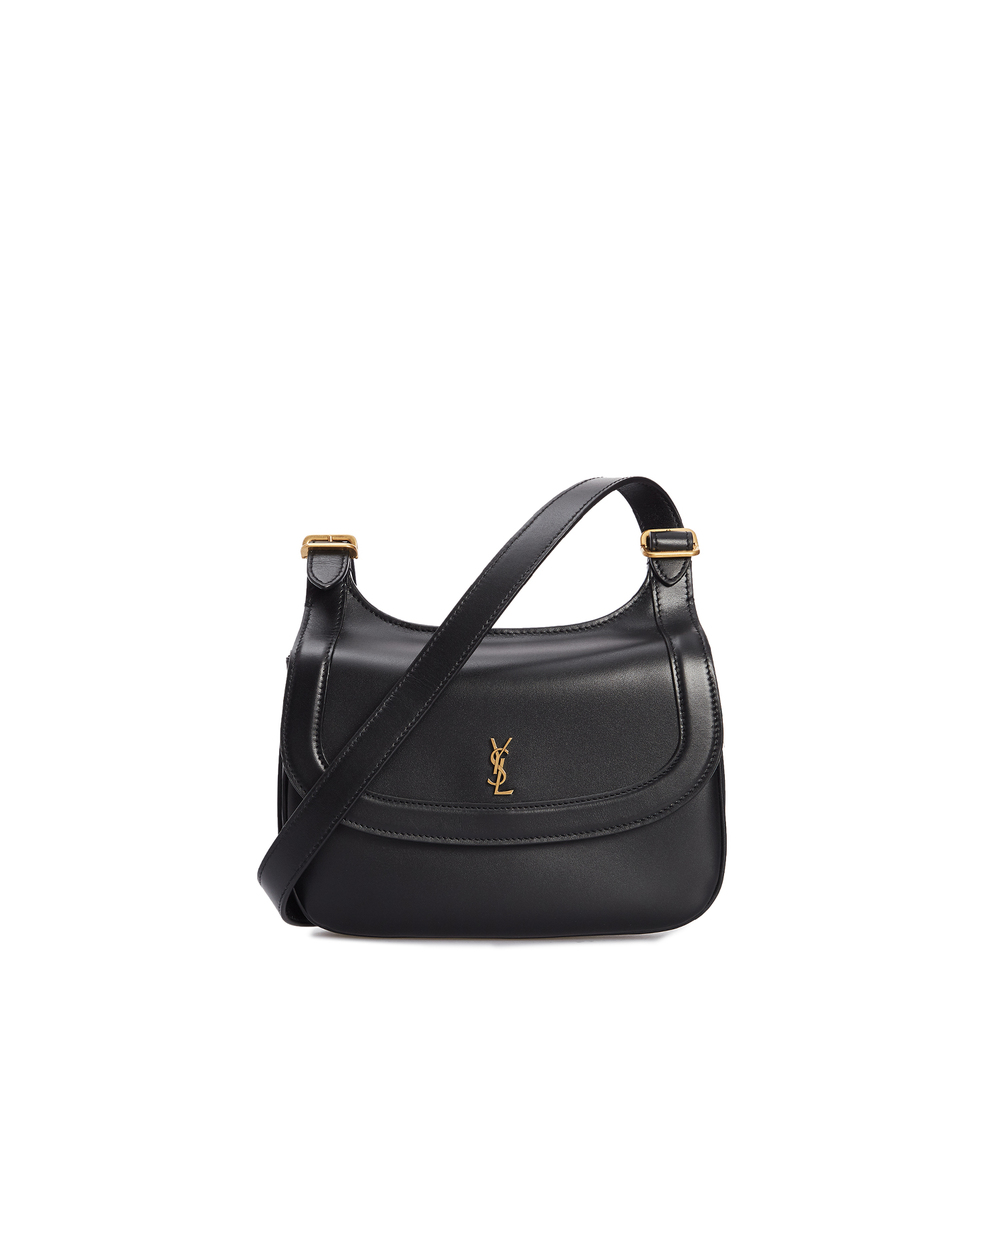 Кожаная сумка Charlie Saint Laurent 686742-2R20W, черный цвет • Купить в интернет-магазине Kameron